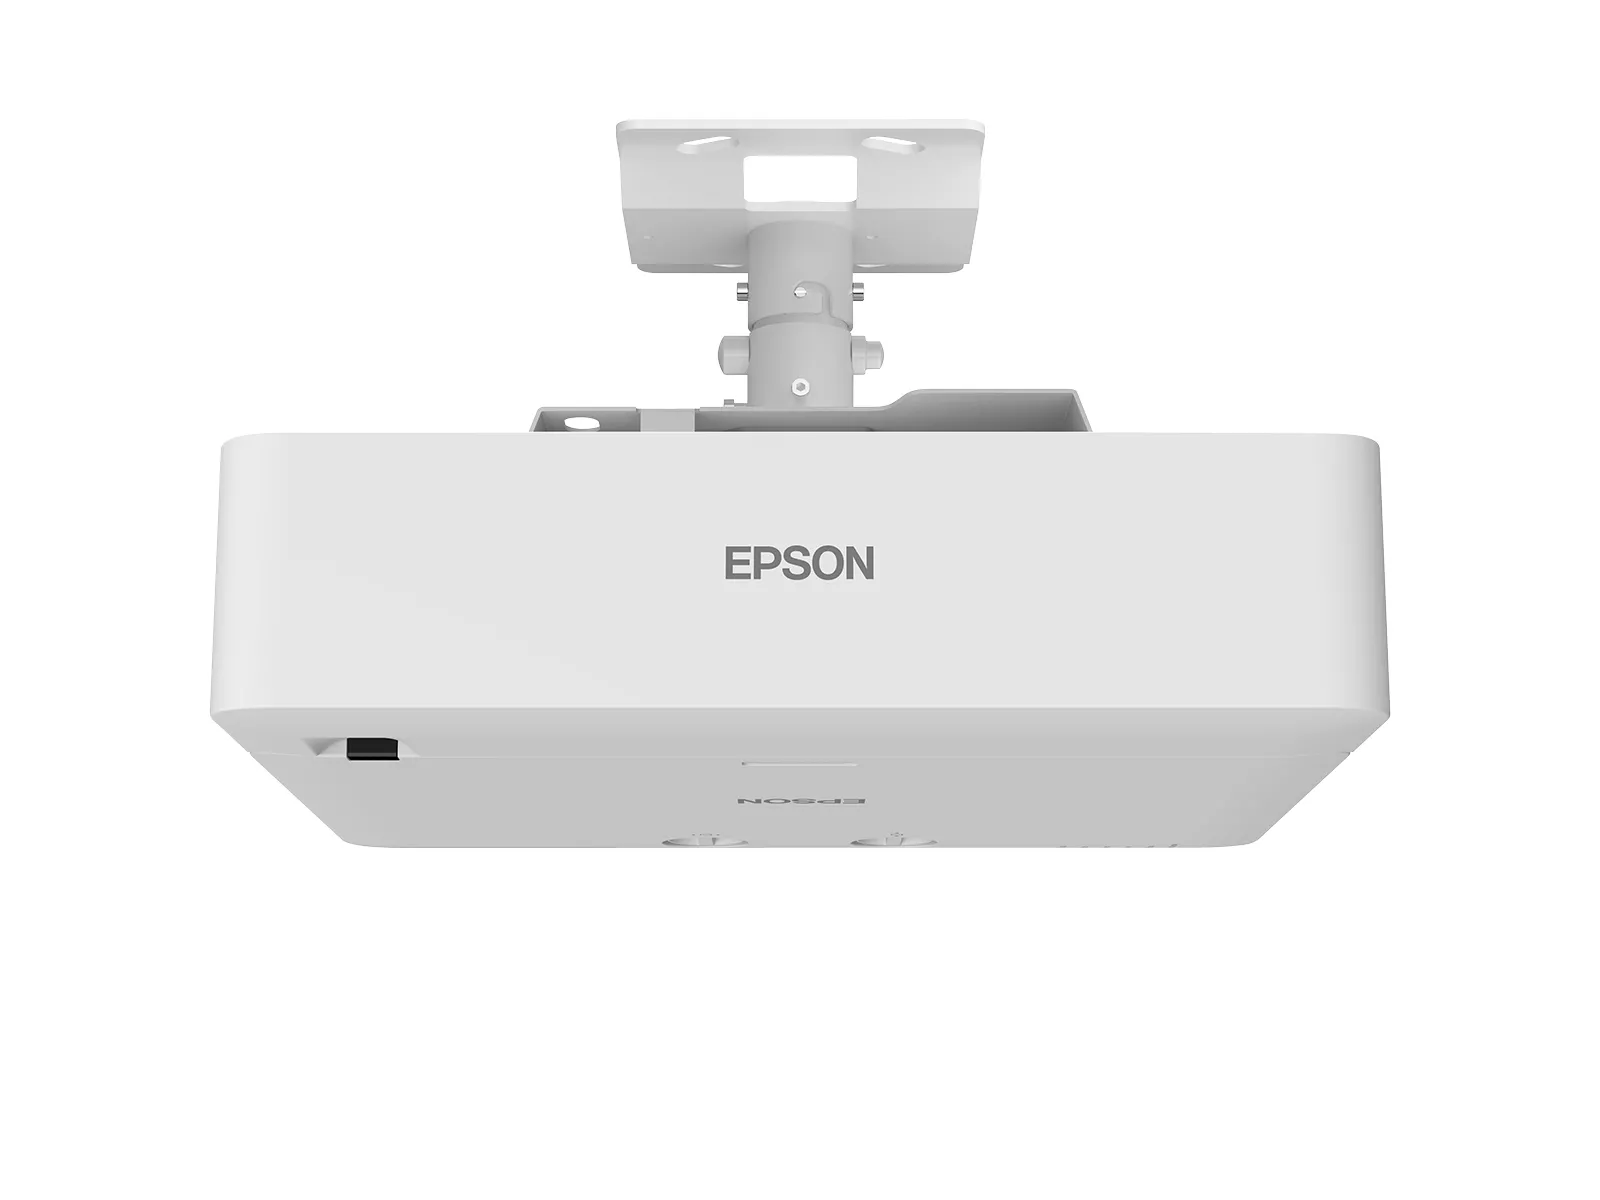 Vente EPSON EB-L770U Projector WUXGA 7000Lm projection ratio Epson au meilleur prix - visuel 6